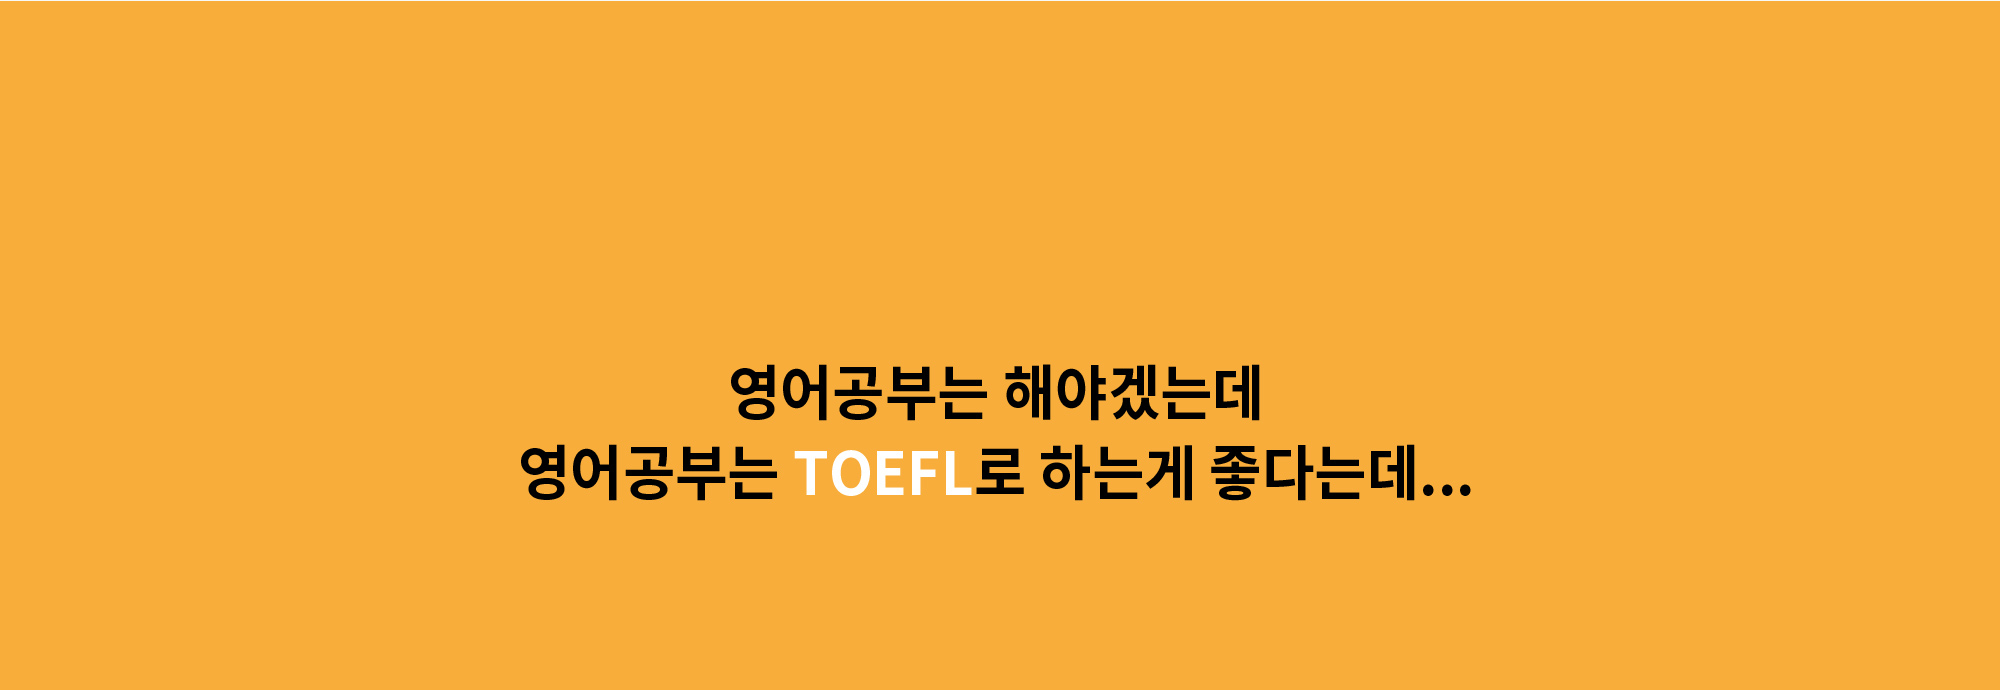 δ ؾ߰ڴµ δ TOEFL ϴ  ٴµ...